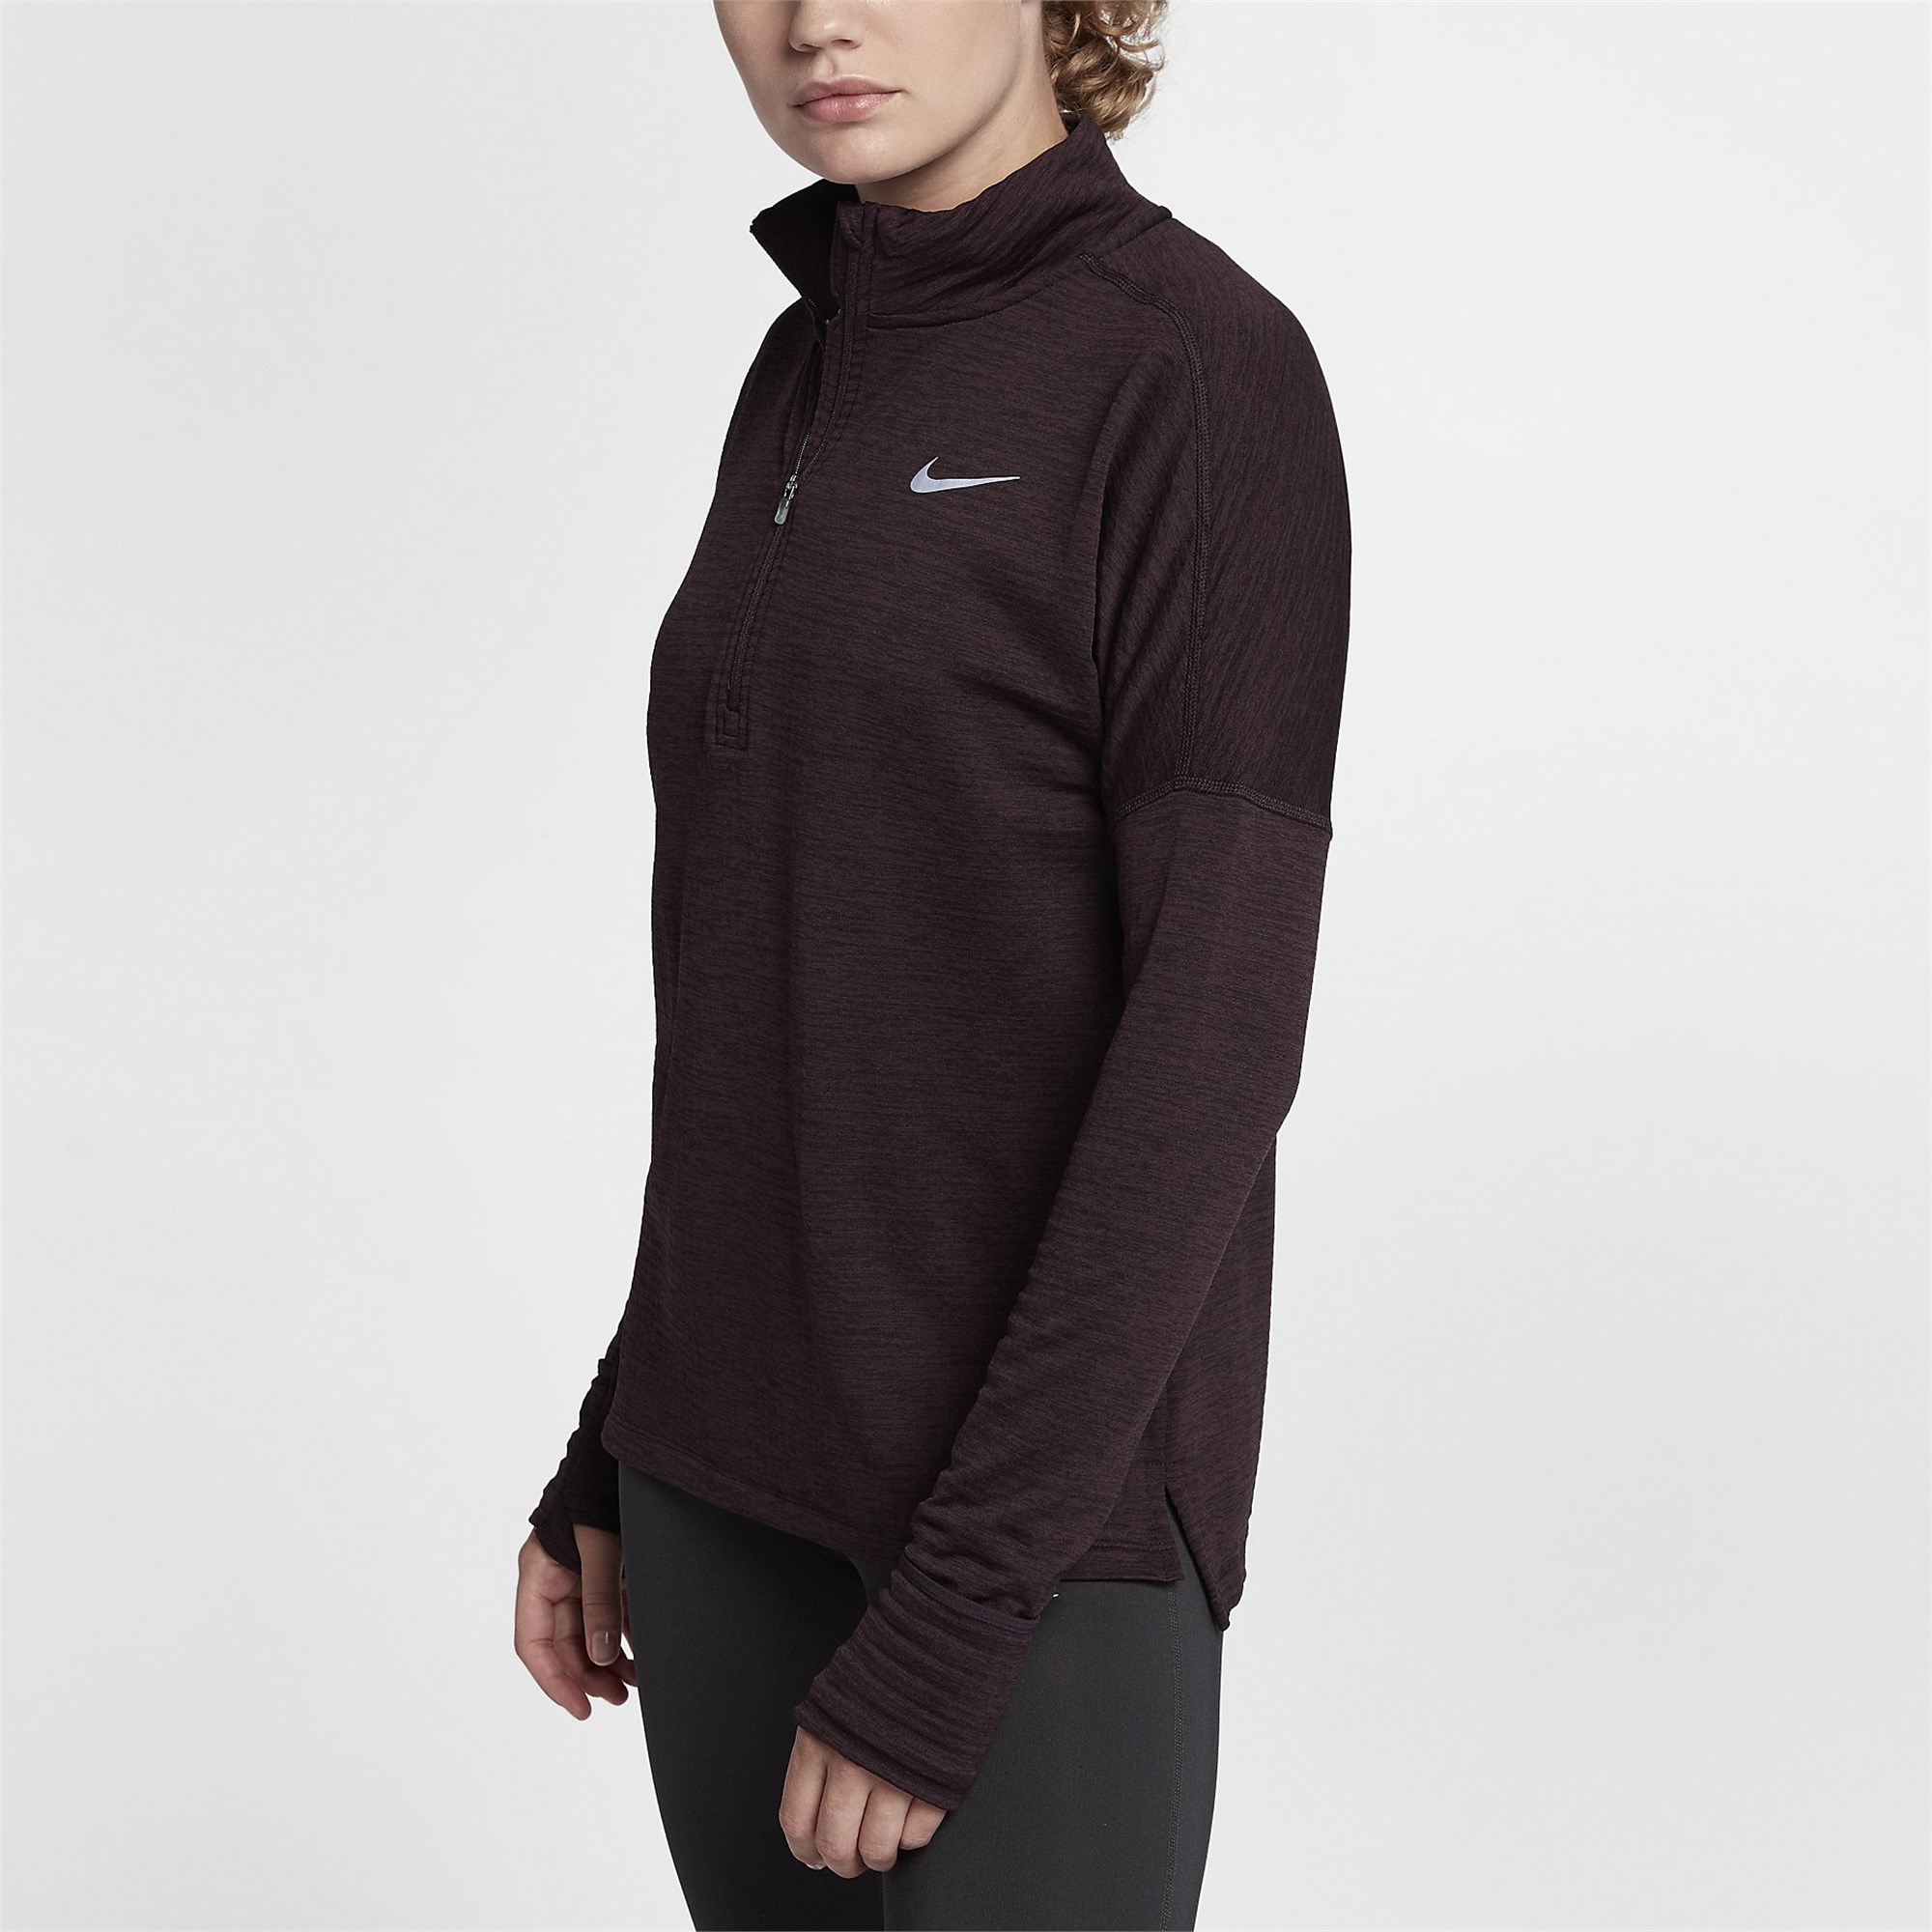 Nike W Nk Thrma Sphr Elmnt Top Hz Kadın Sweatshirt Ürün kodu: 855521-652 |  Etichet Sport